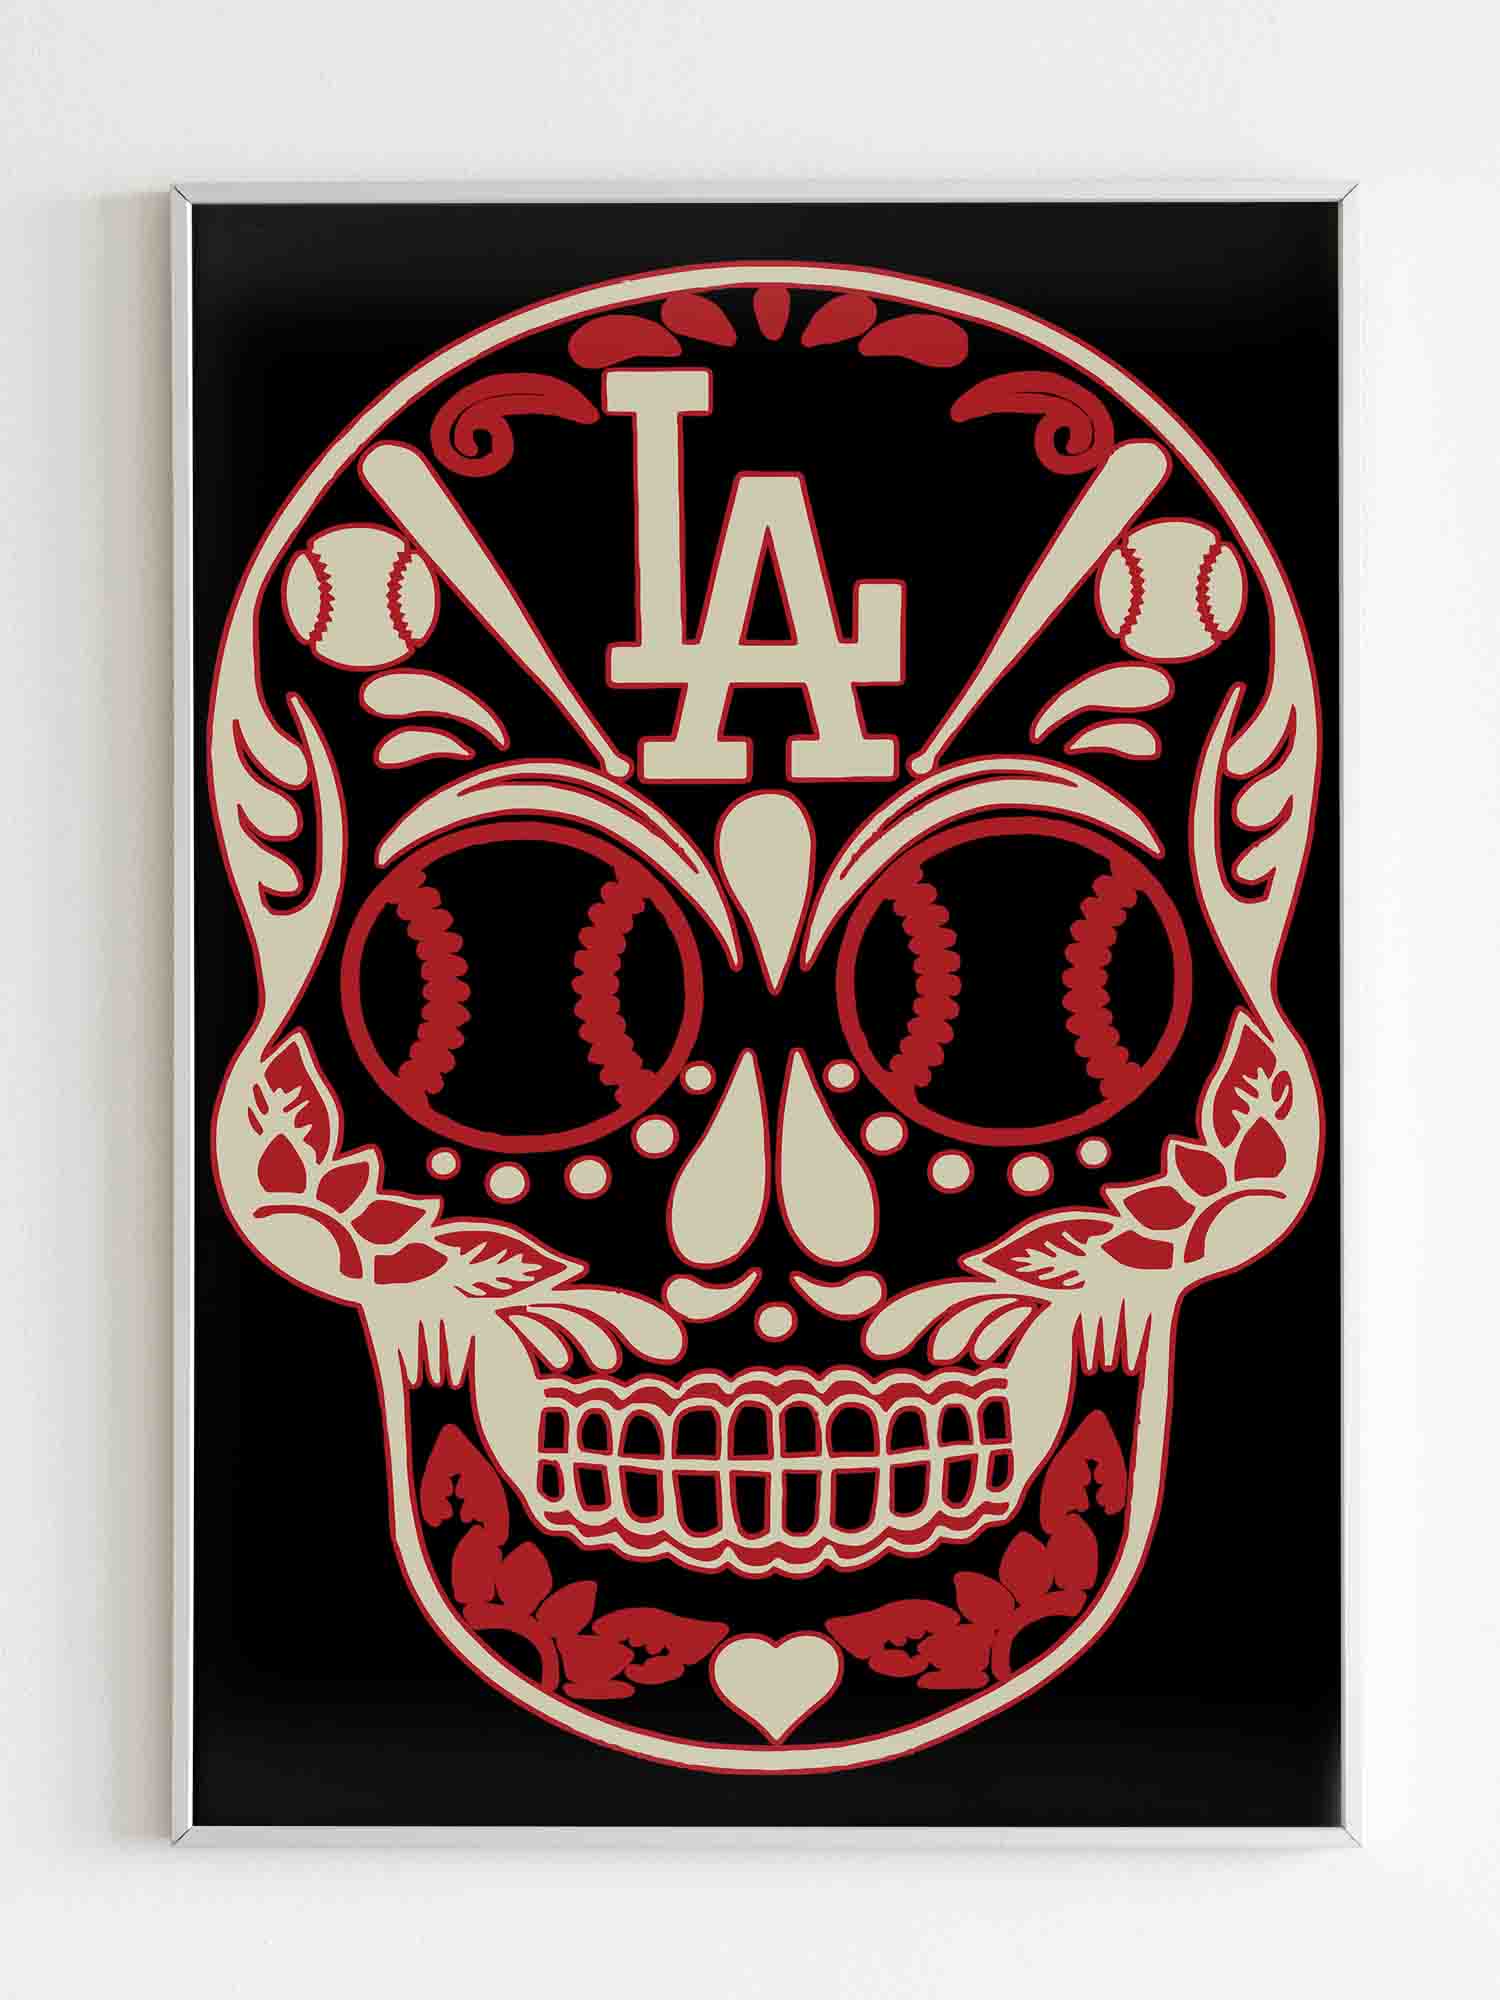 Los Angeles Dodgers Dia De Los Muertos Skull Poster Poster Art Design